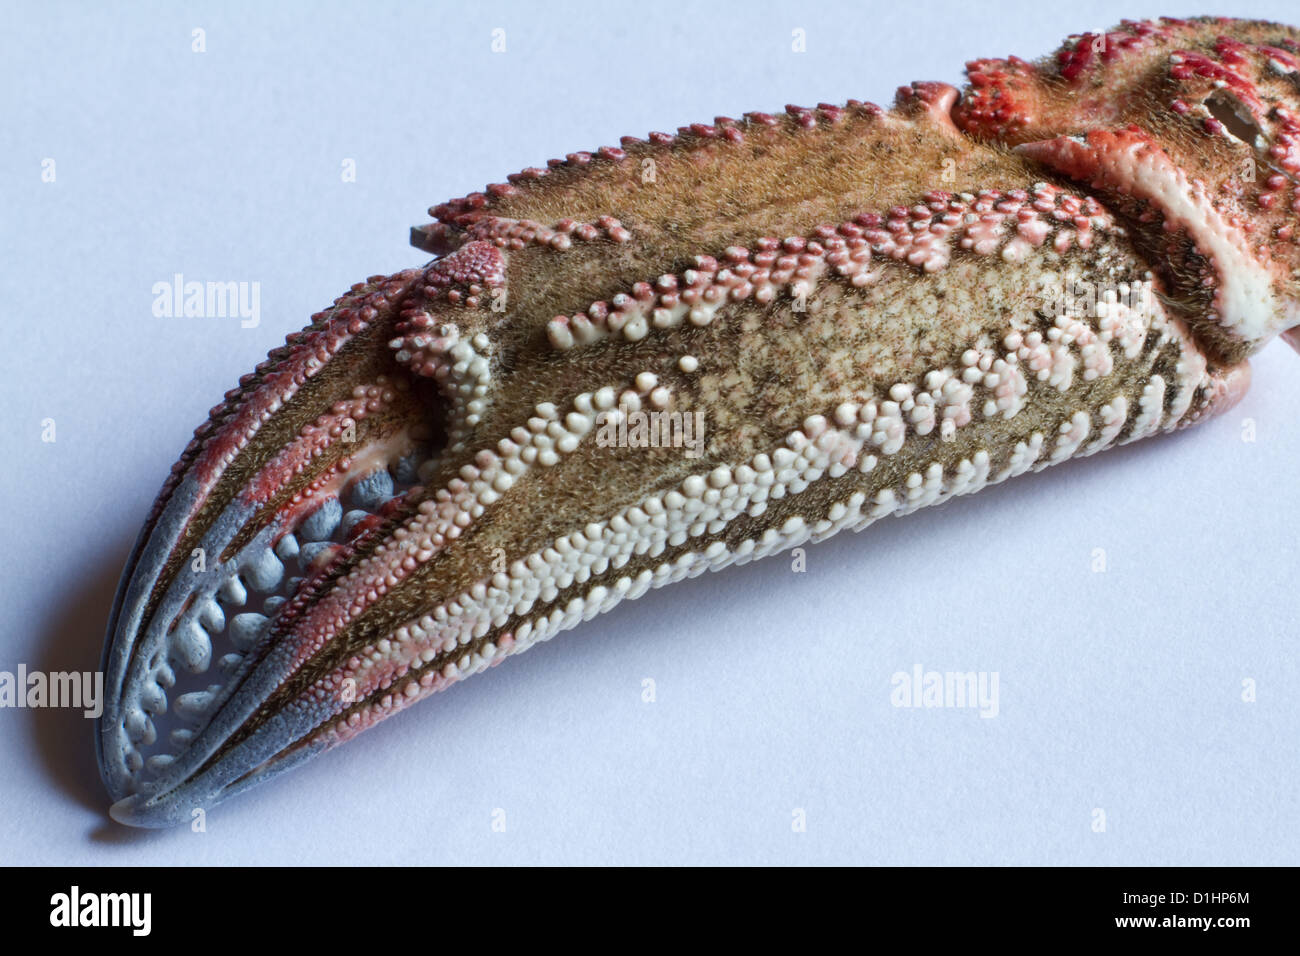 Une macro shot montrant le détail de la couleur et de la texture sur la pince d'un crabe brun Banque D'Images